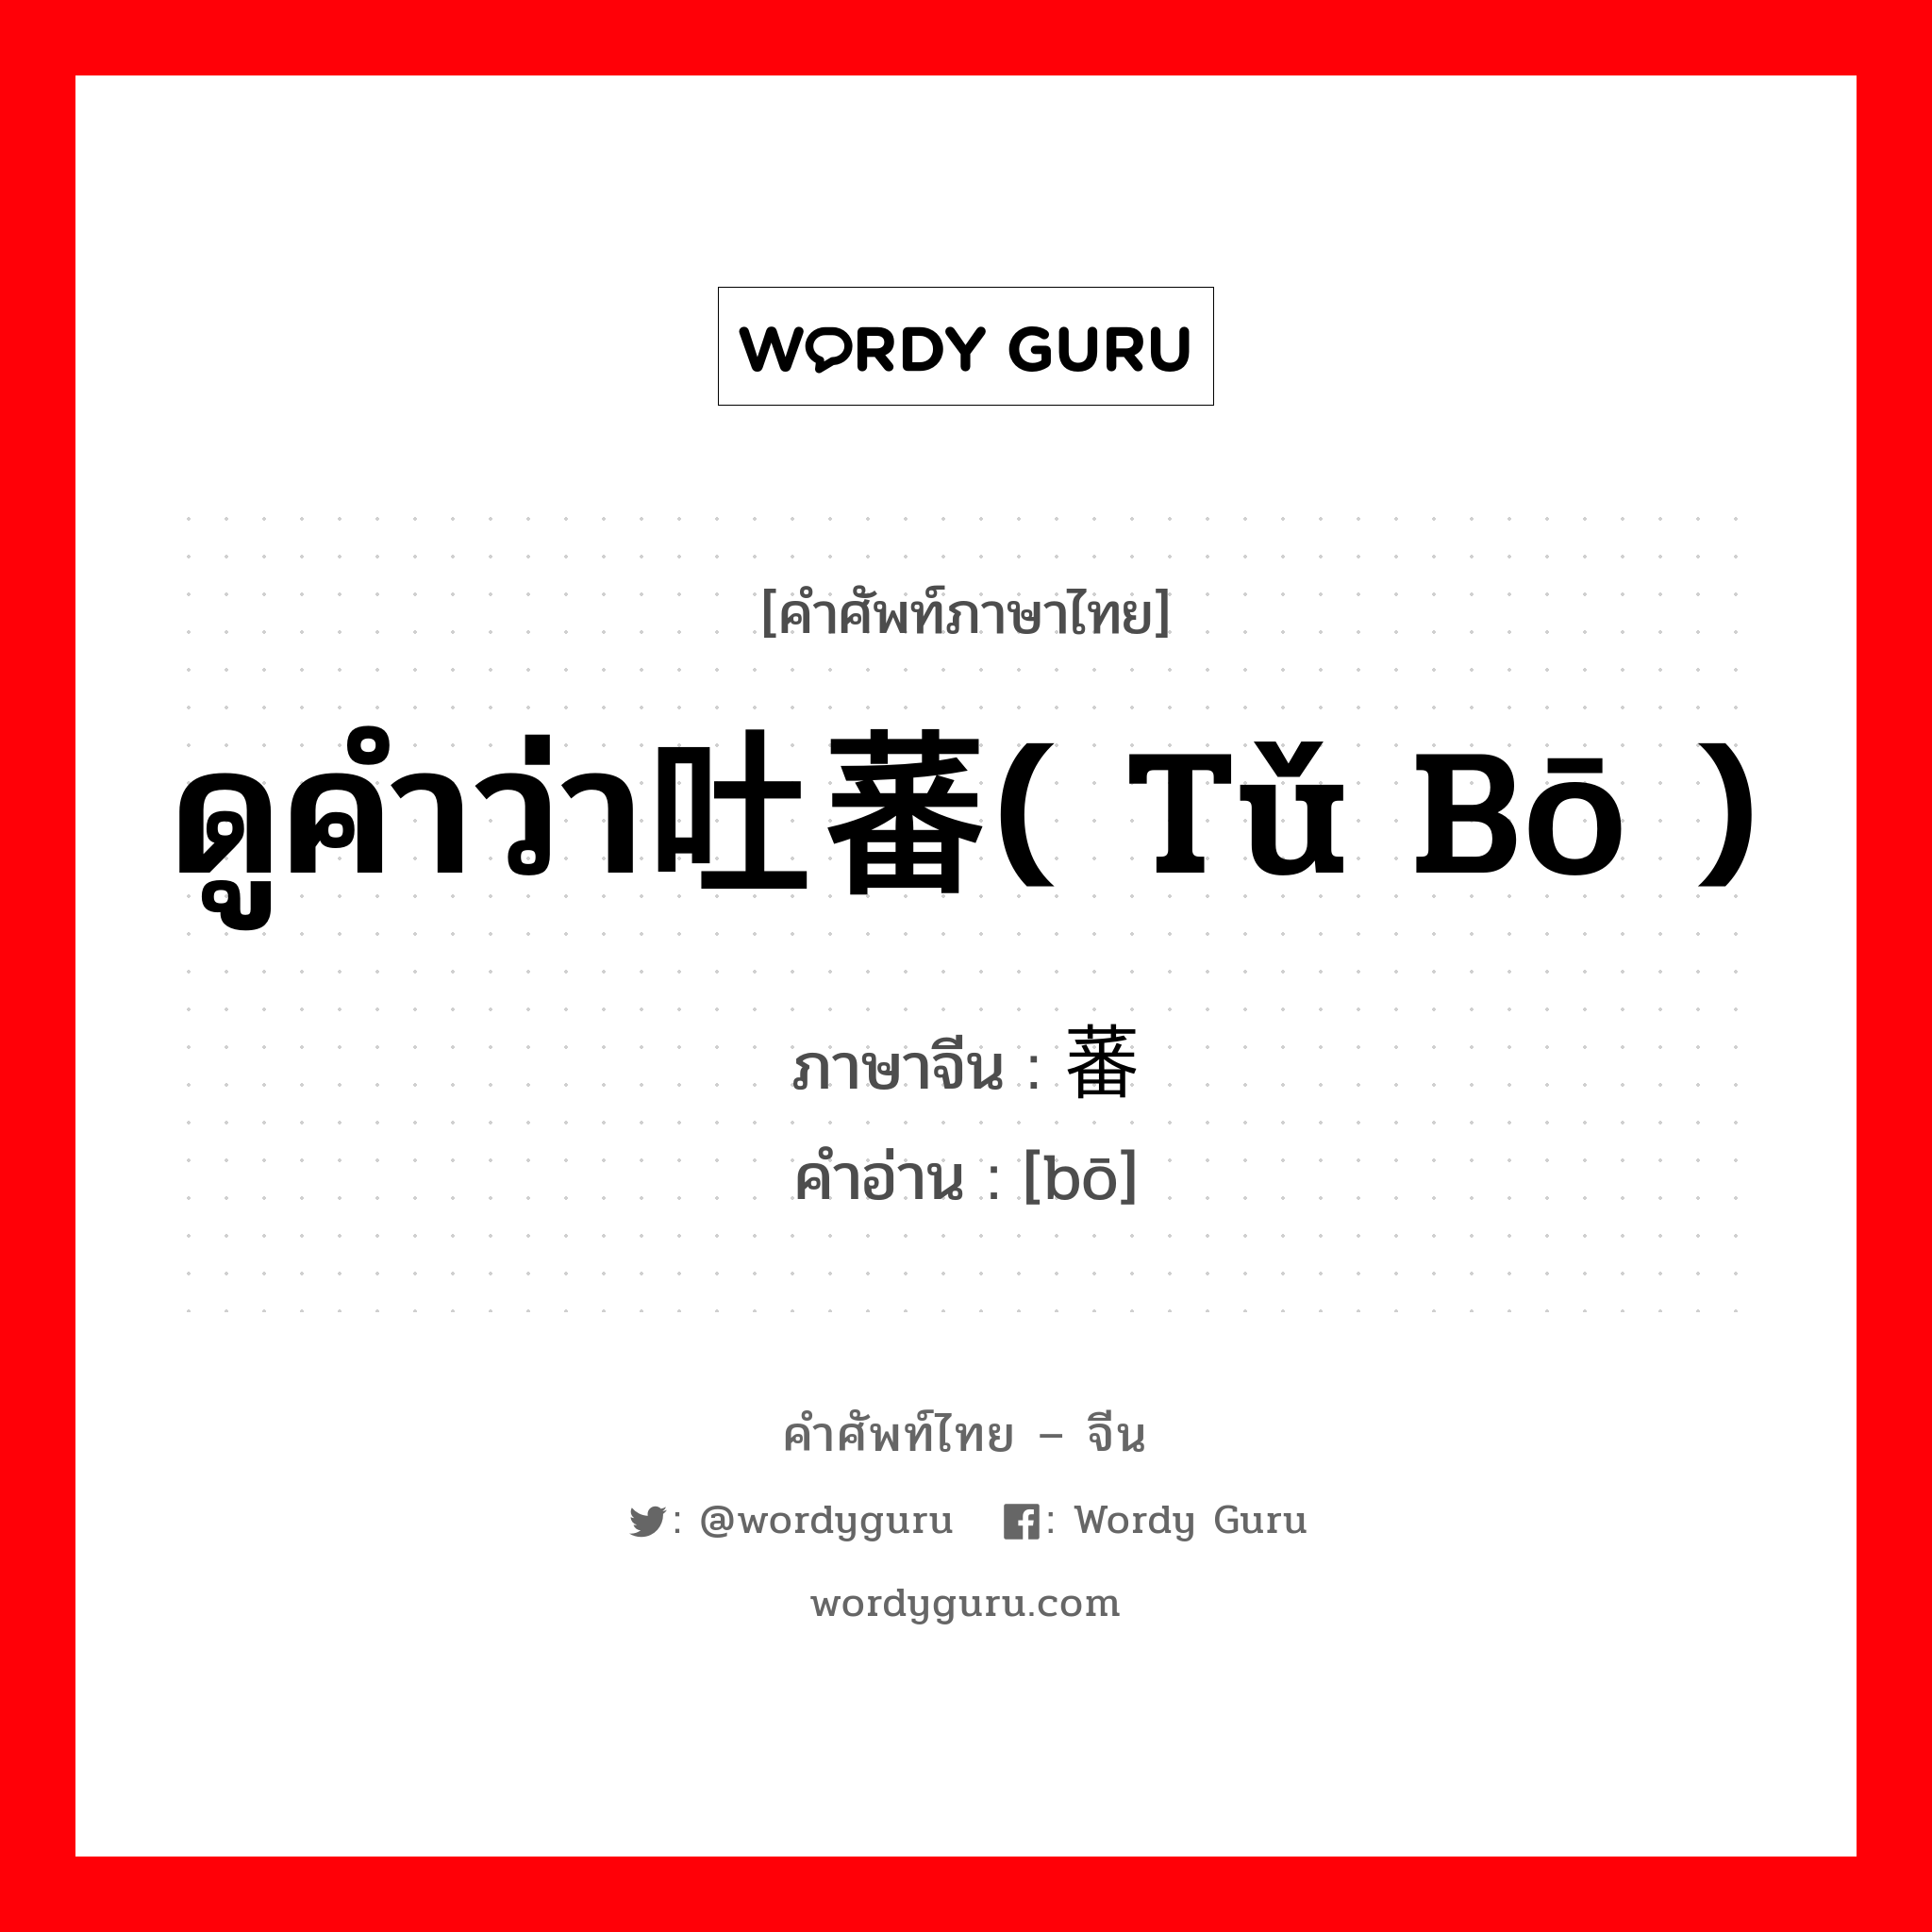 ดูคำว่า吐蕃( tǔ bō ) ภาษาจีนคืออะไร, คำศัพท์ภาษาไทย - จีน ดูคำว่า吐蕃( tǔ bō ) ภาษาจีน 蕃 คำอ่าน [bō]